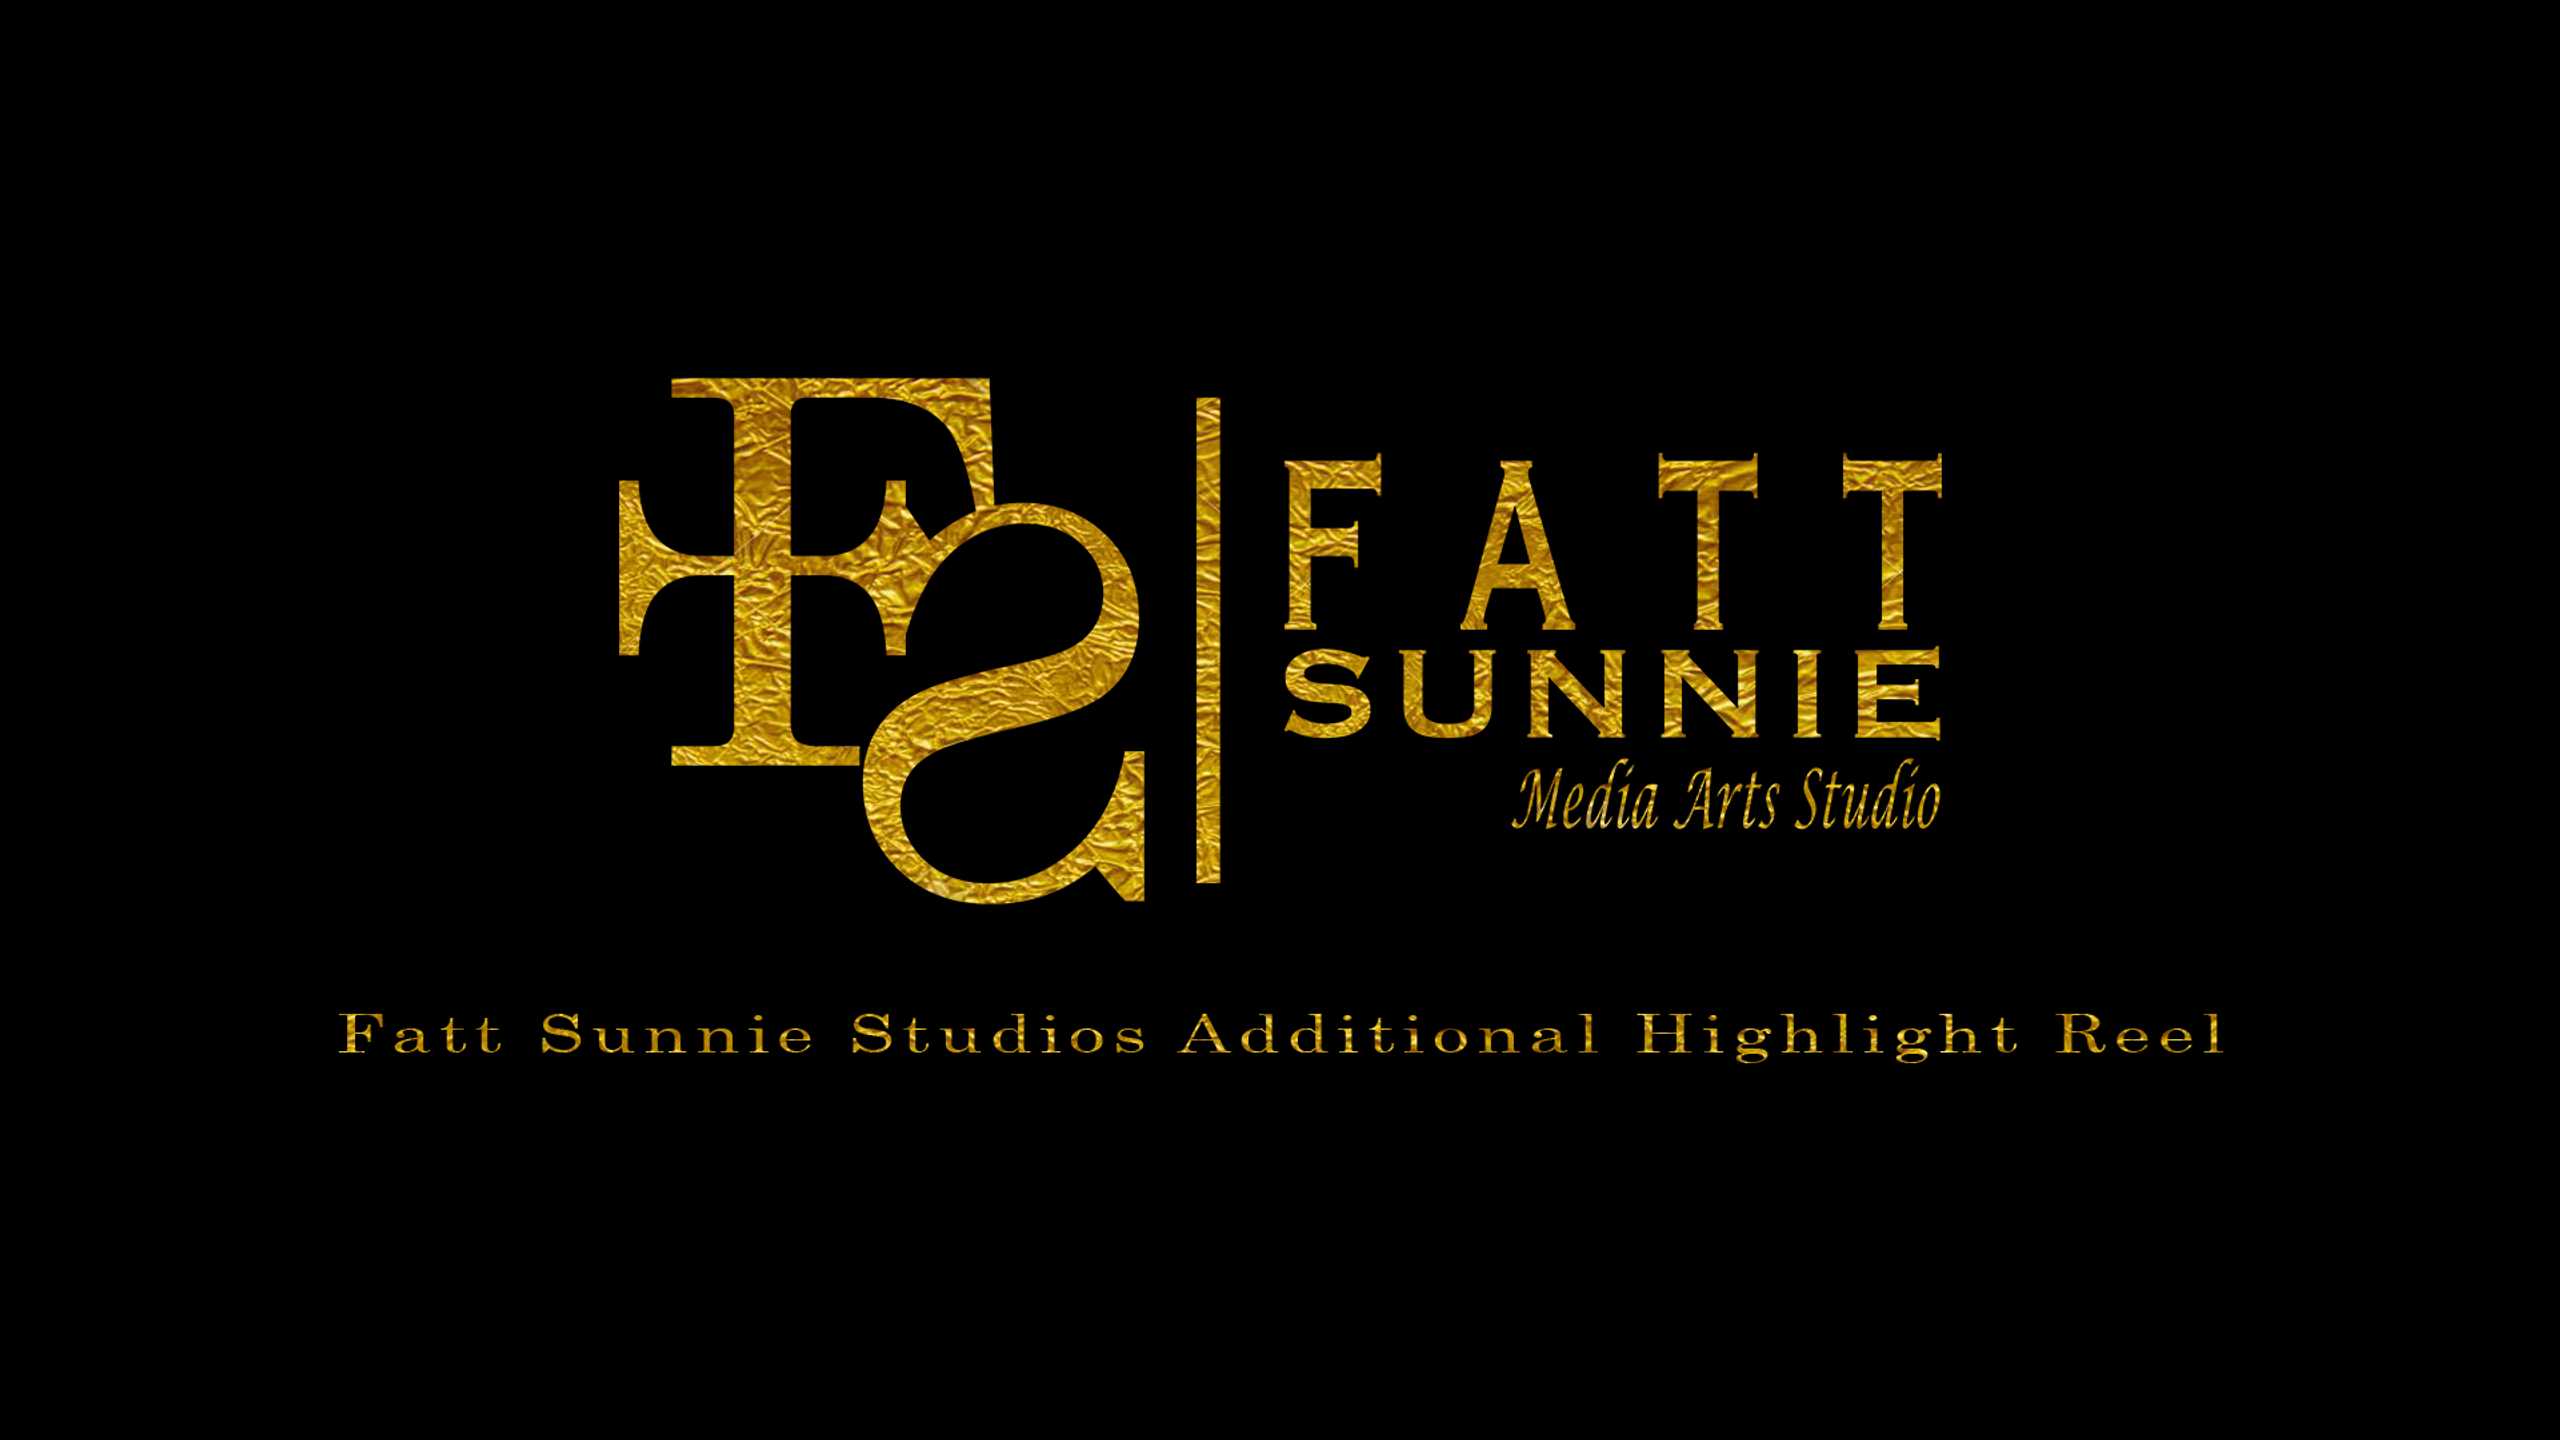 Fatt Sunnie Studios Highlight Video